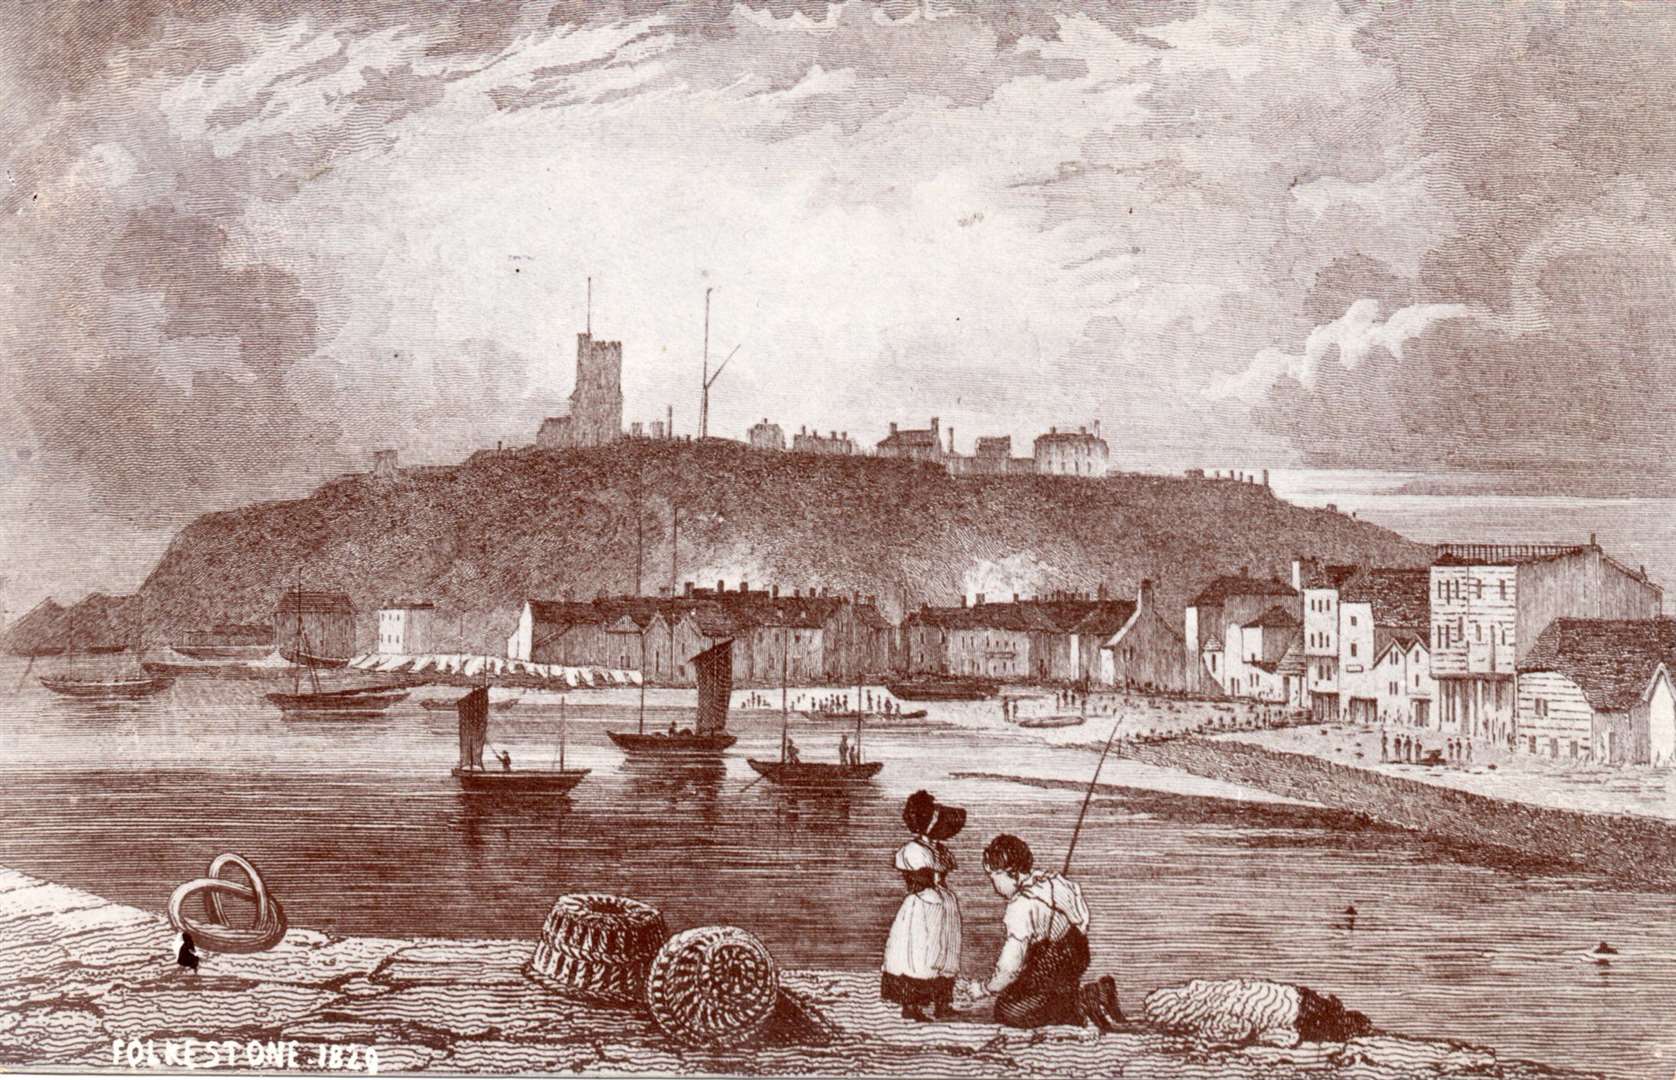 Folkestone harbour in 1829